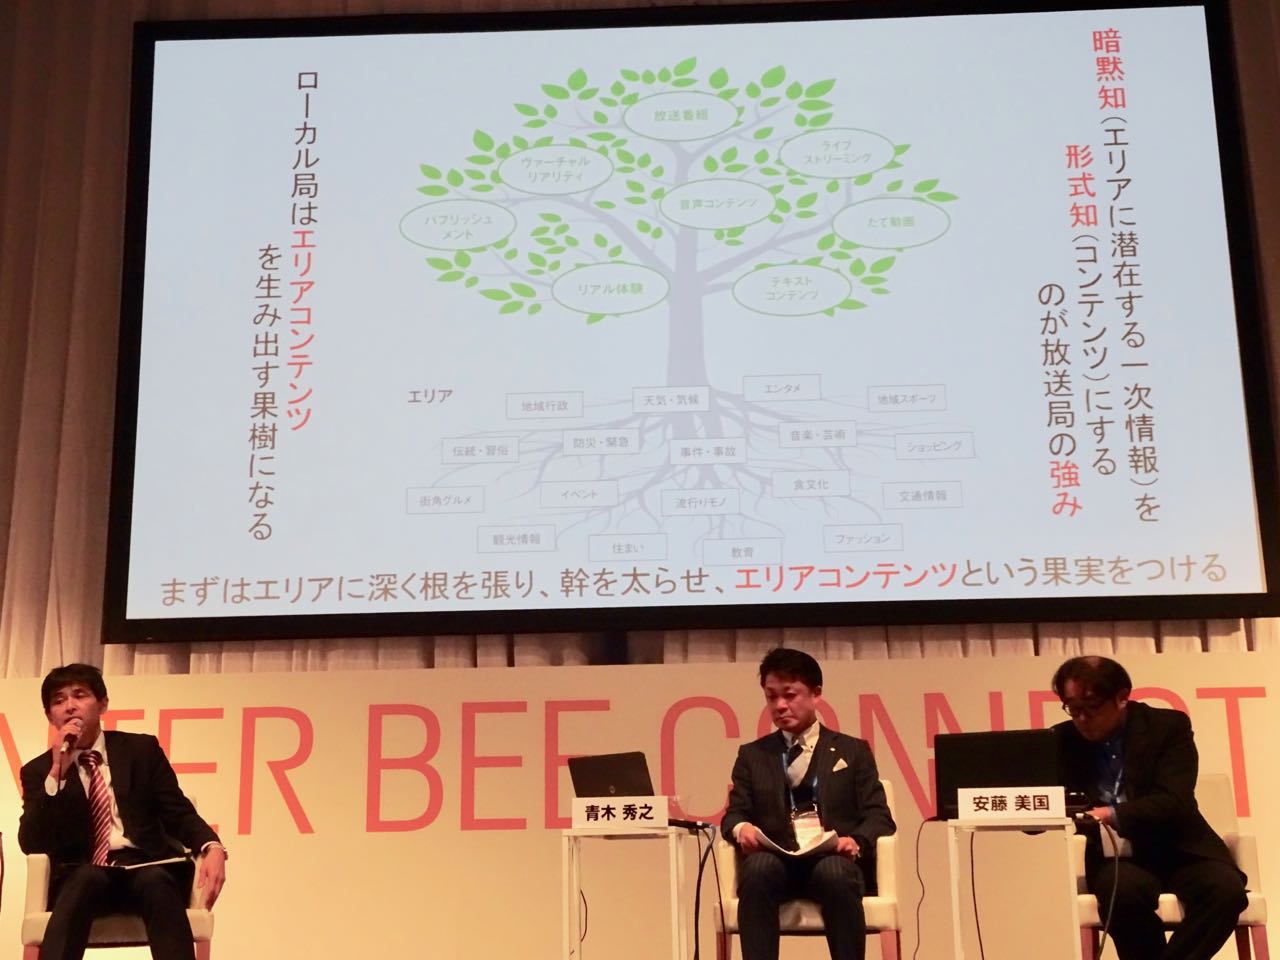 齋藤氏は放送局は。エリアに根を張ることでコンテンツという果実をつけることができる大きな樹になれることを示した